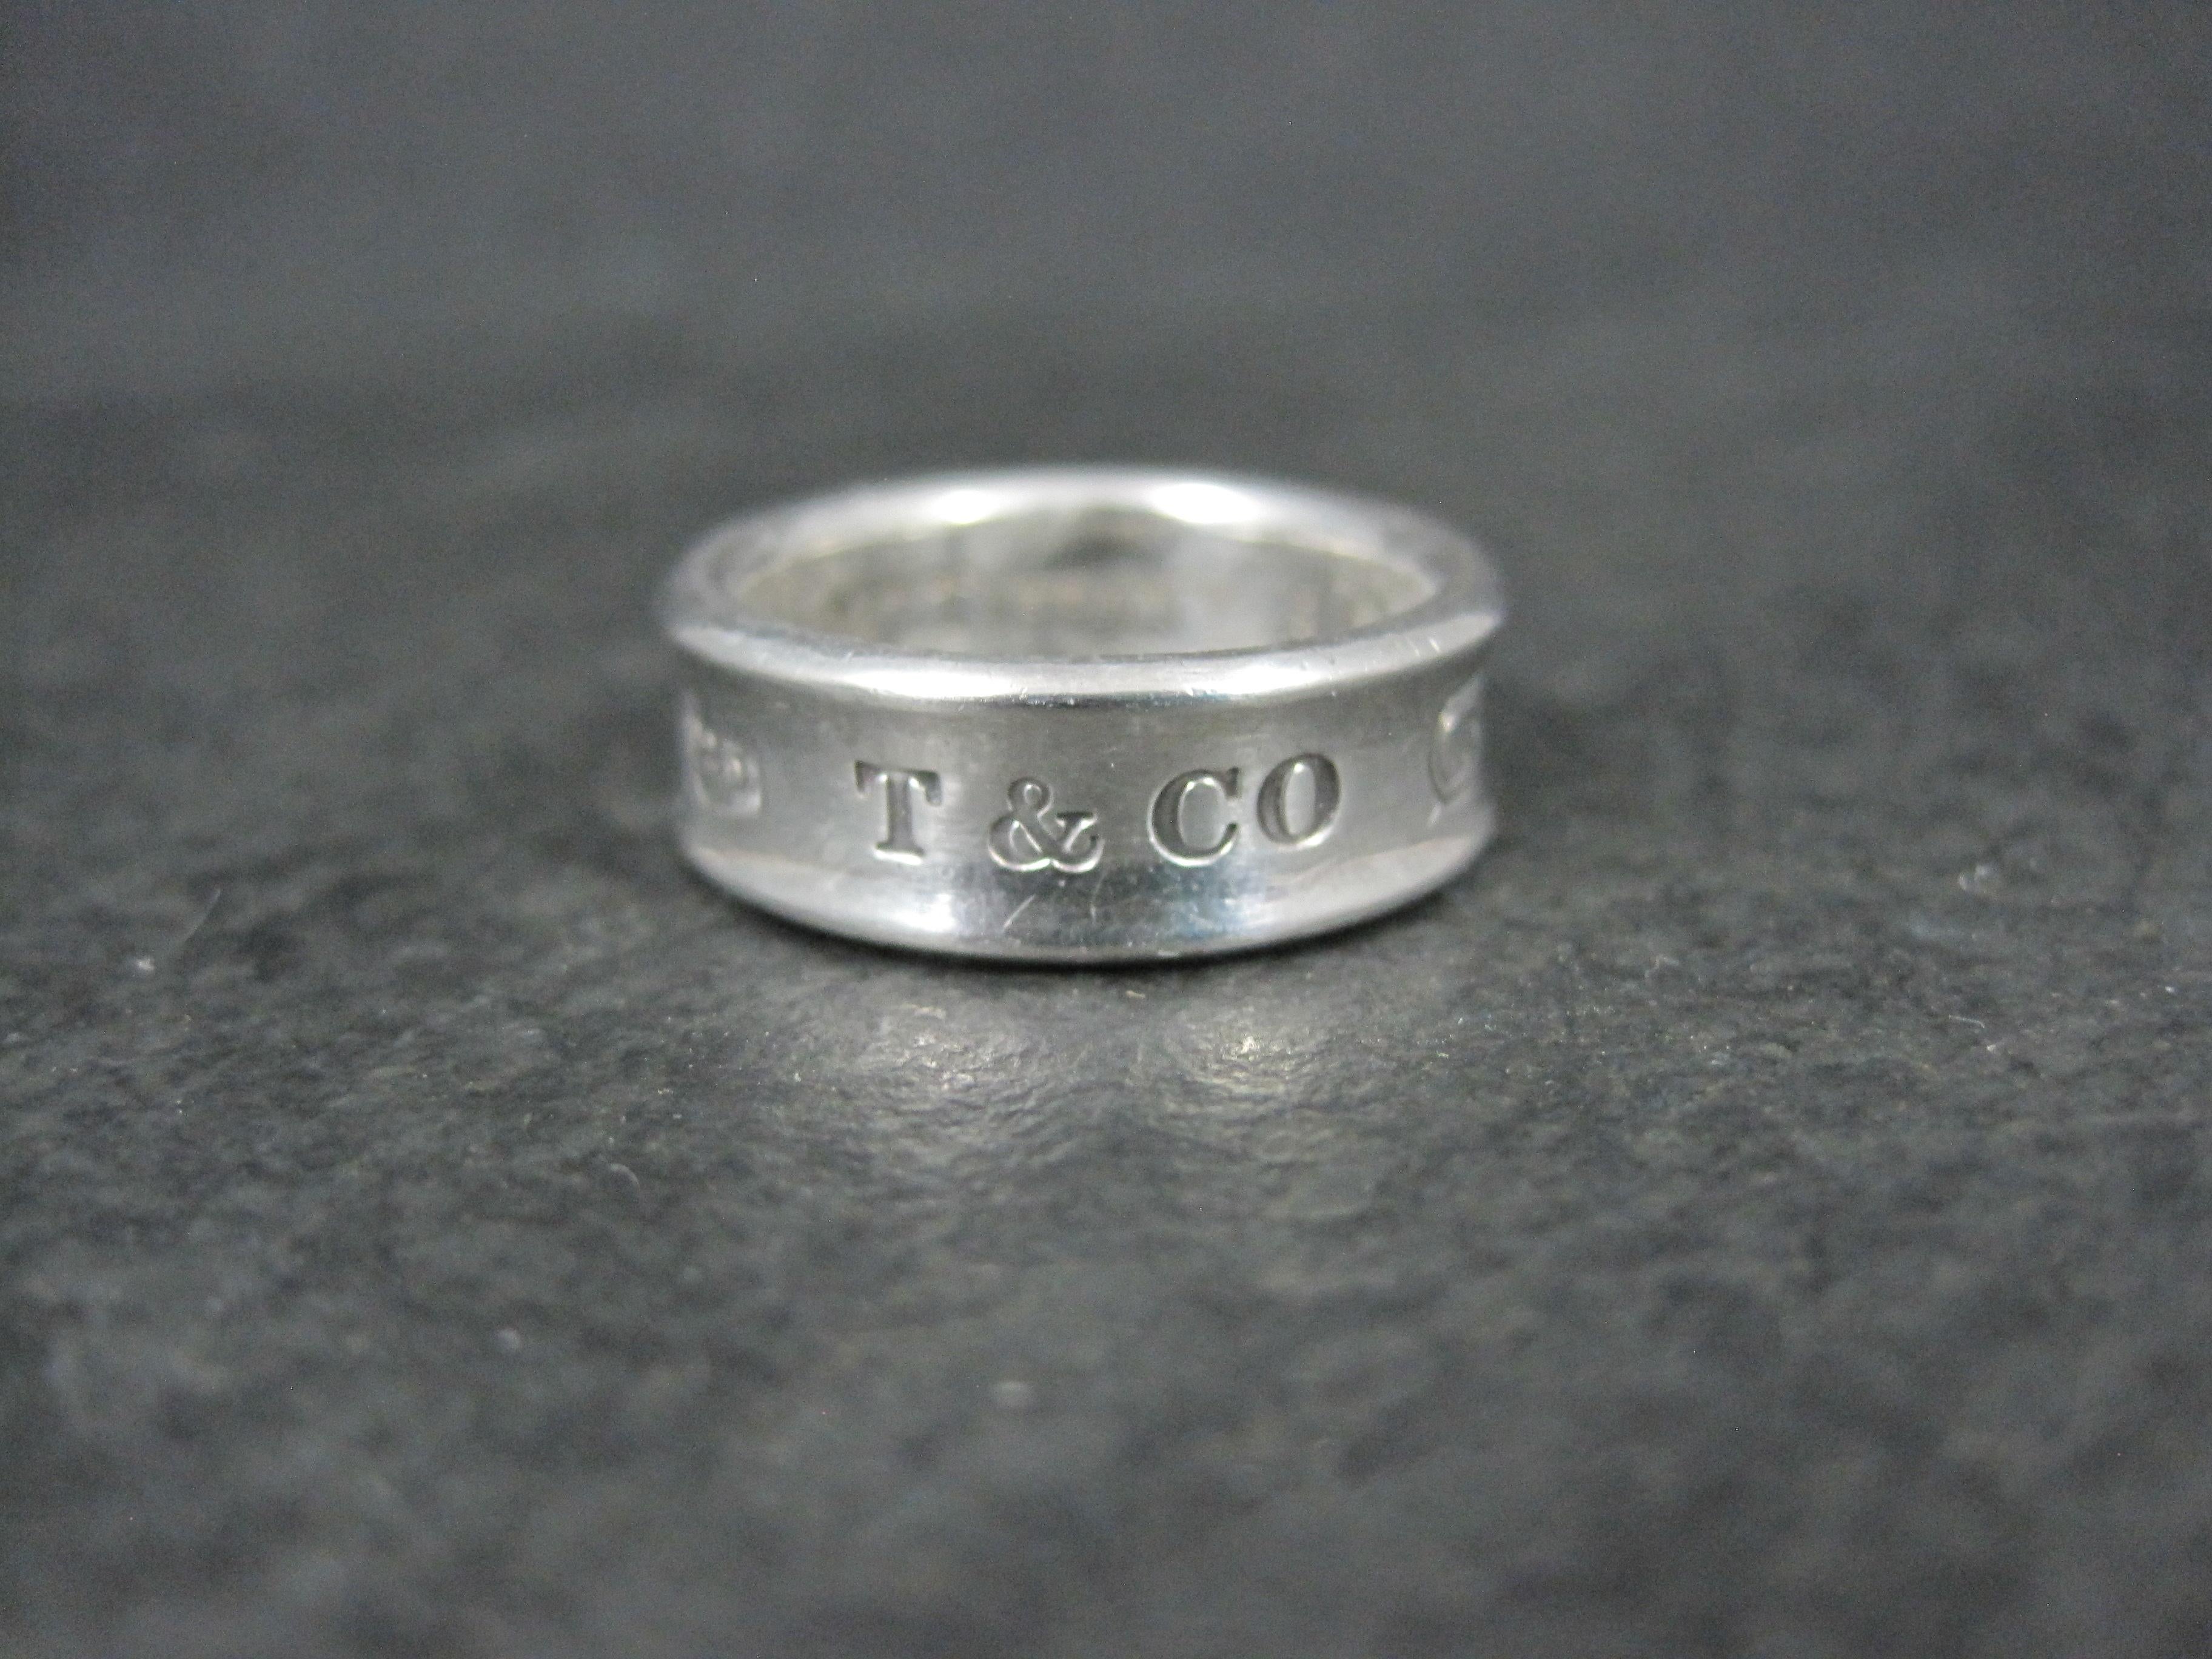 Cette magnifique et authentique bague à anneau concave de 1997 Tiffany & Co, 1837, est en argent sterling.

Dimensions : 7mm de large (considéré comme moyen)
Taille : 6 1/2

Condit : Excellent avec pochette d'origine Tiffany & Co

